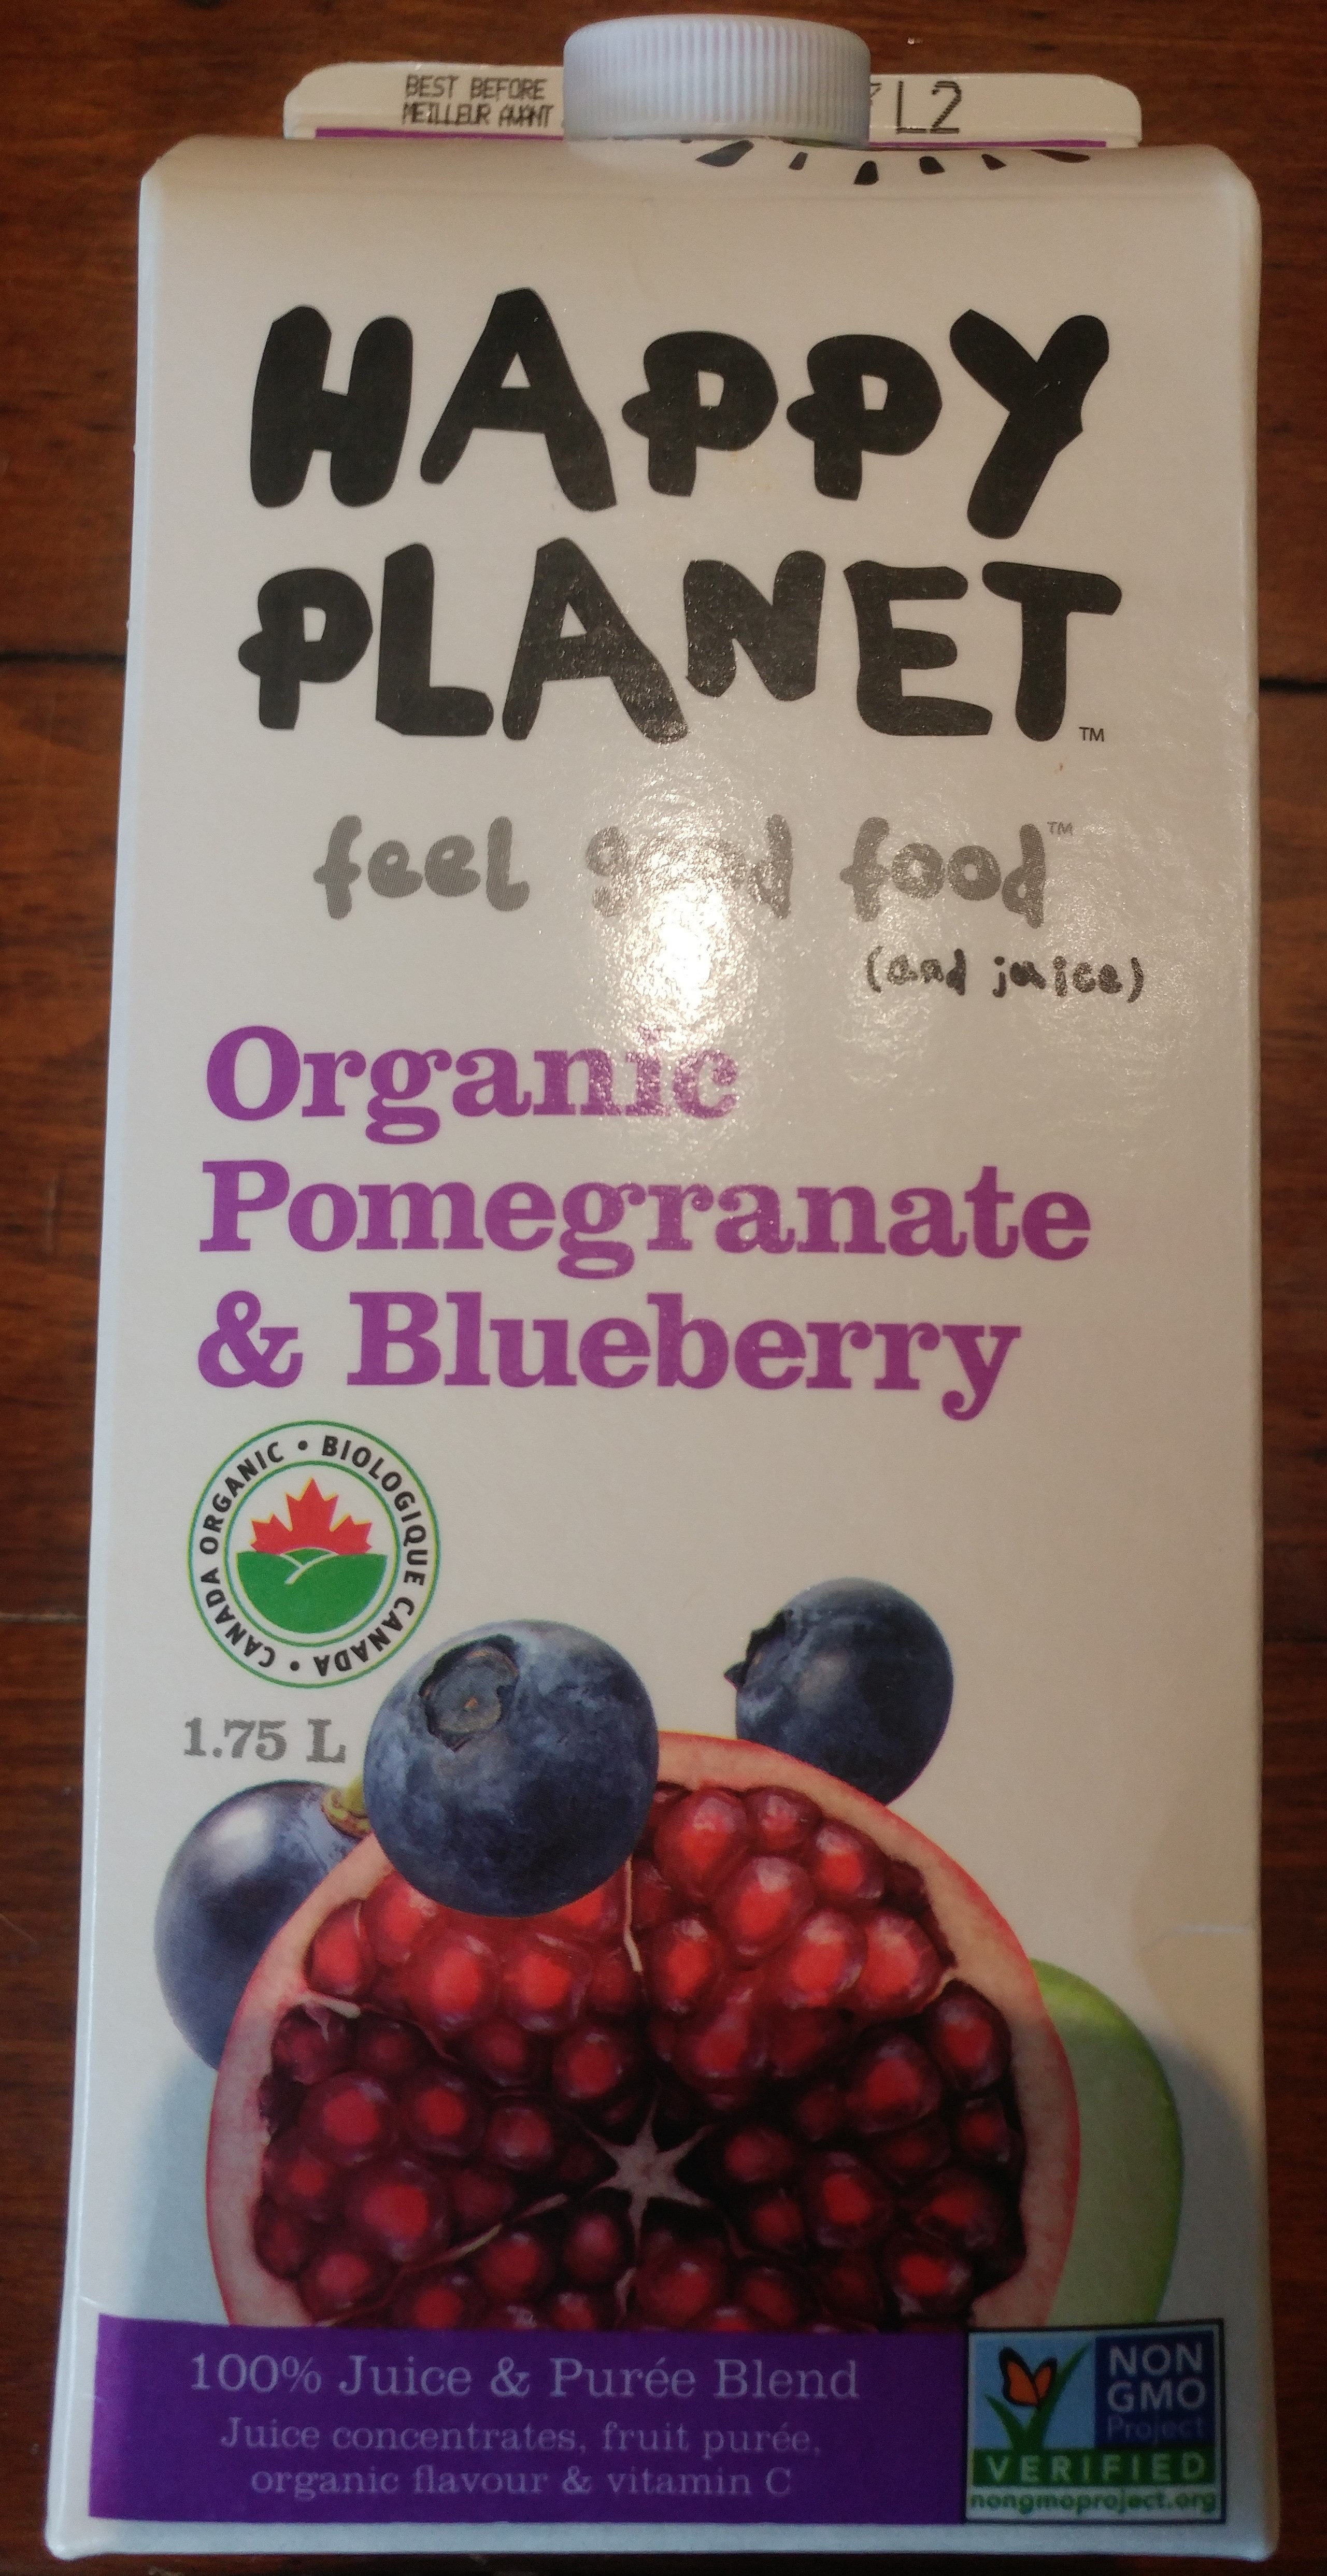 Organic Pomegranate & Blueberry 100% Juice & Purée Blend - Produit - en